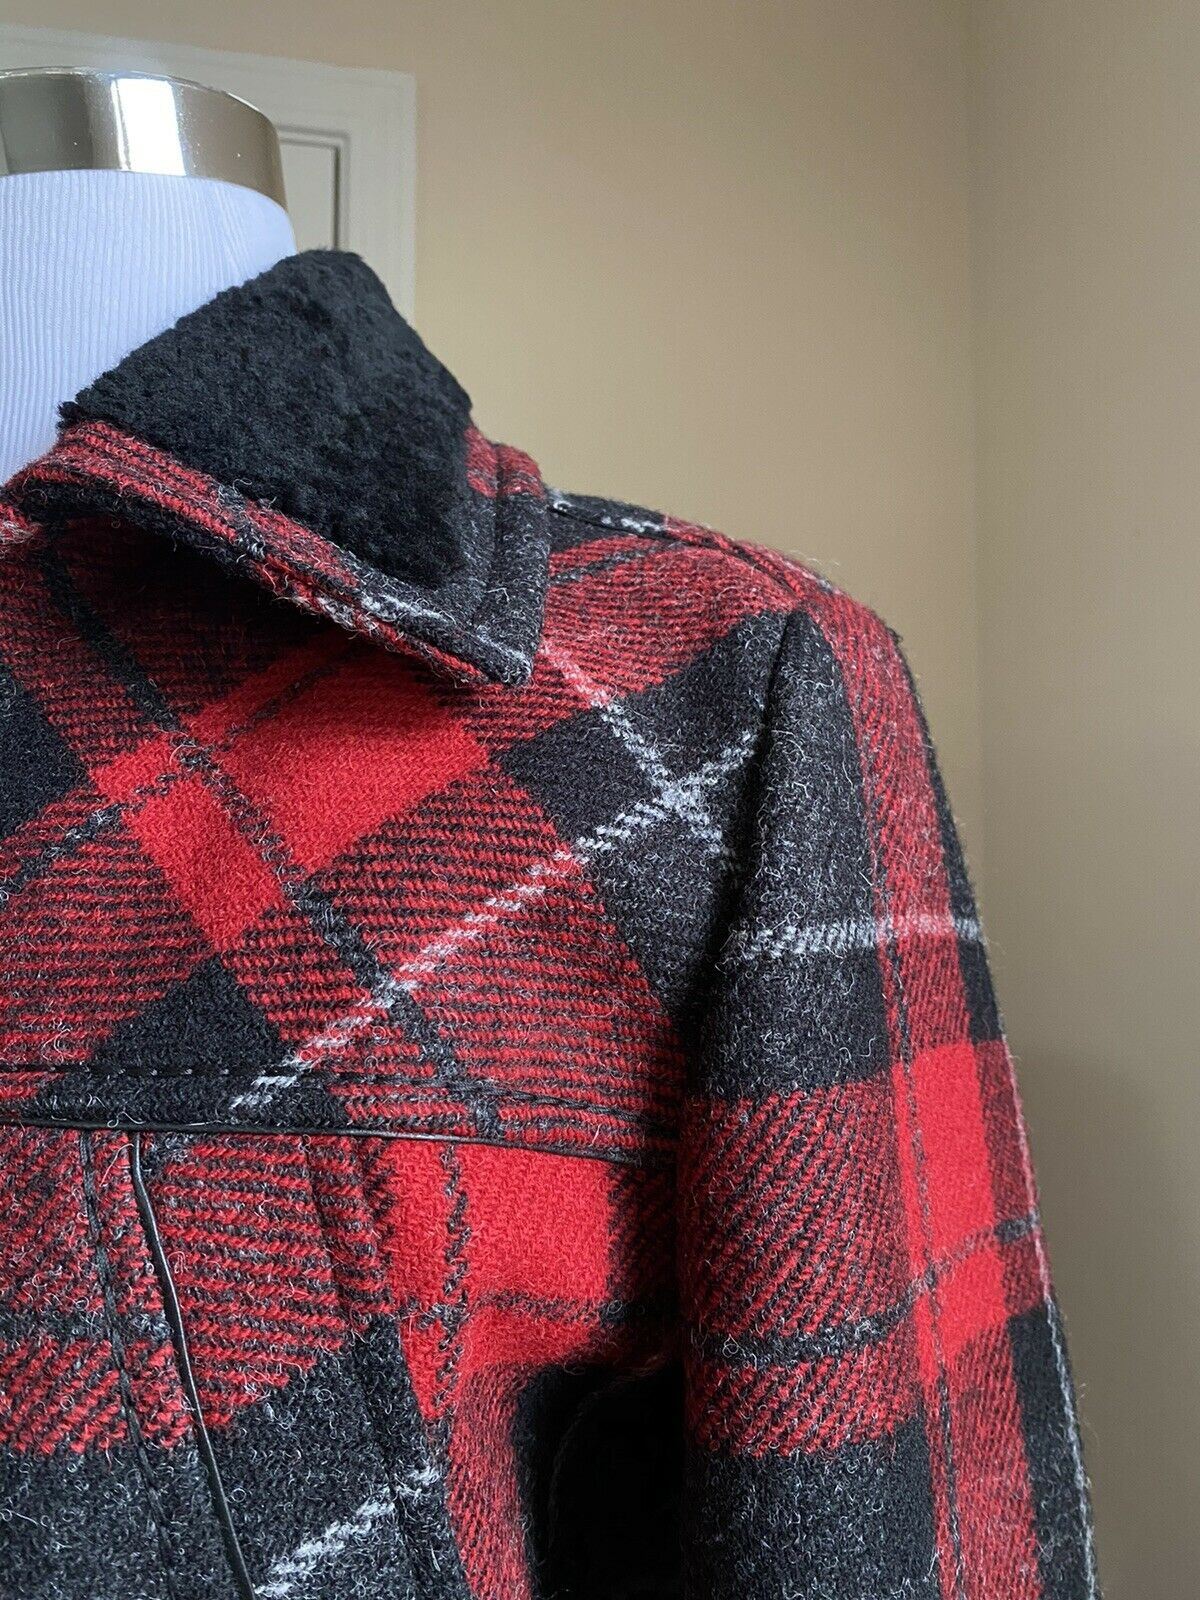 Новая мужская стеганая куртка в шотландскую клетку Saint Laurent за 3190 долларов с стриженым красным/бл. 38 США